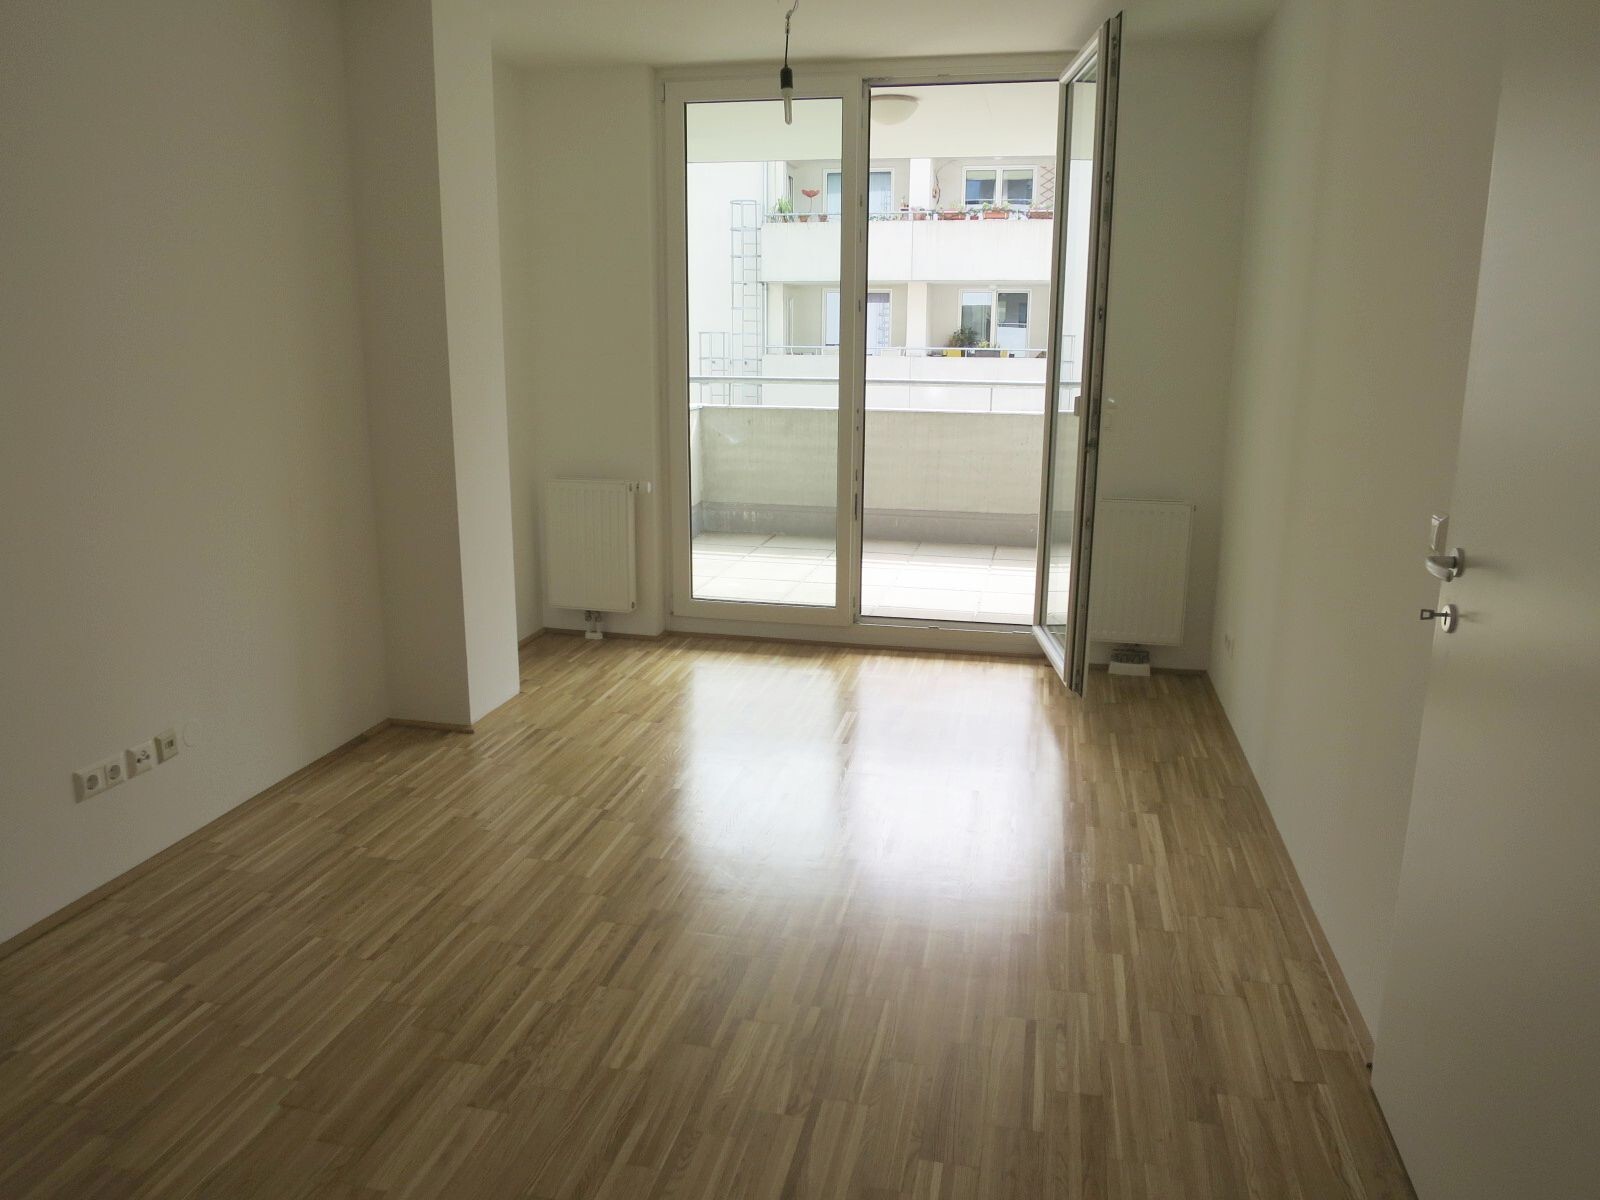 Attraktive 2-Zimmer-Wohnung mit Loggia nahe Columbus Center in 1100 Wien zu mieten